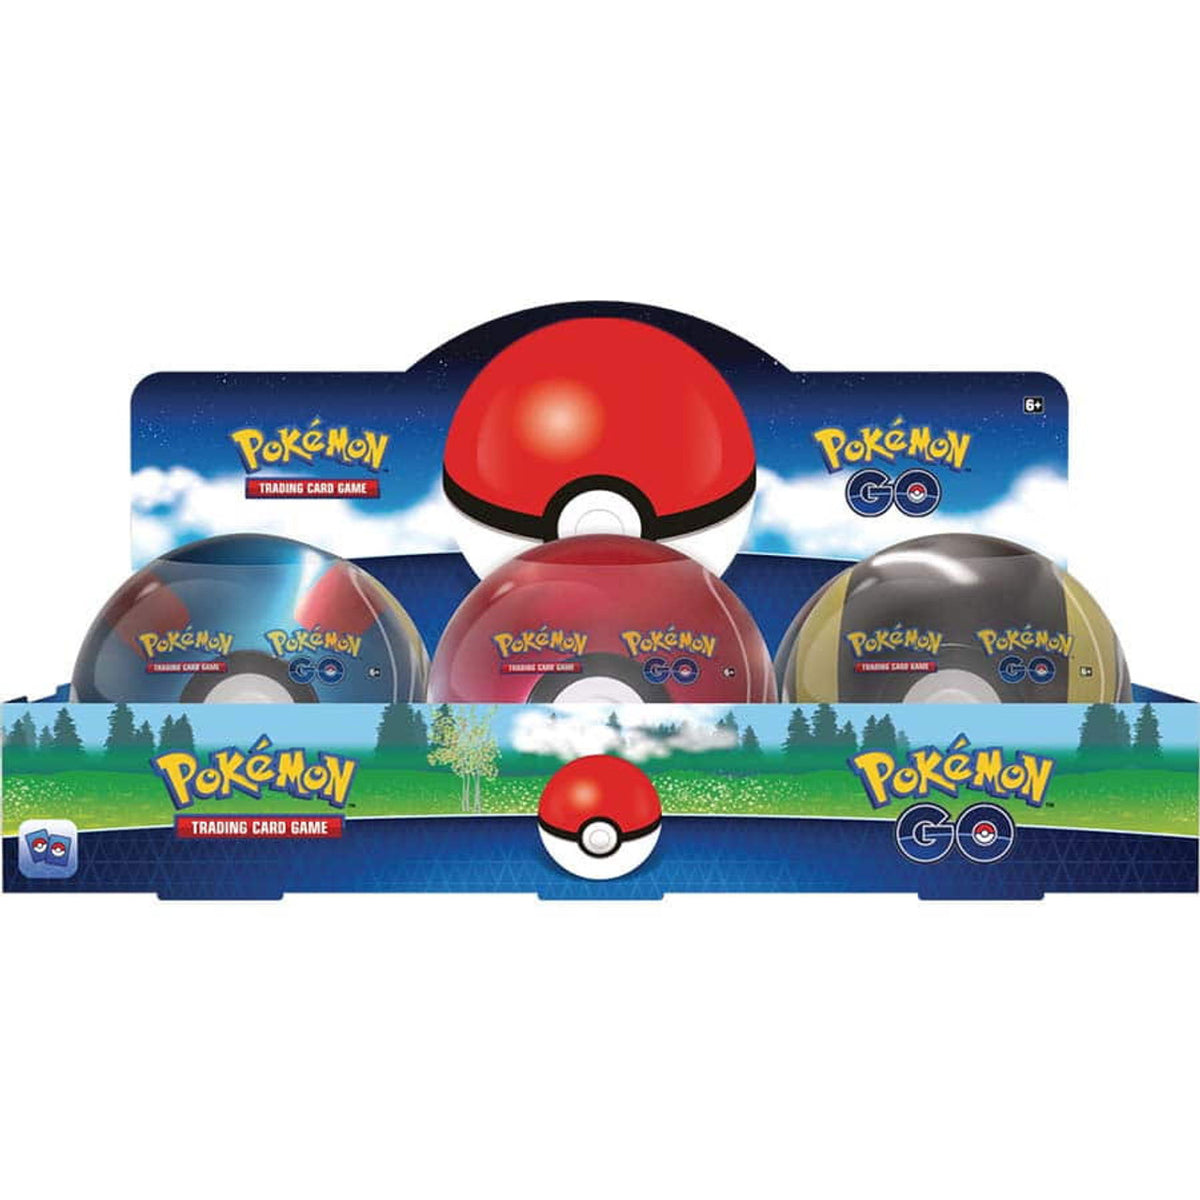 Pokemon TCG: Pokemon Go 6 Pokeball Tin Case